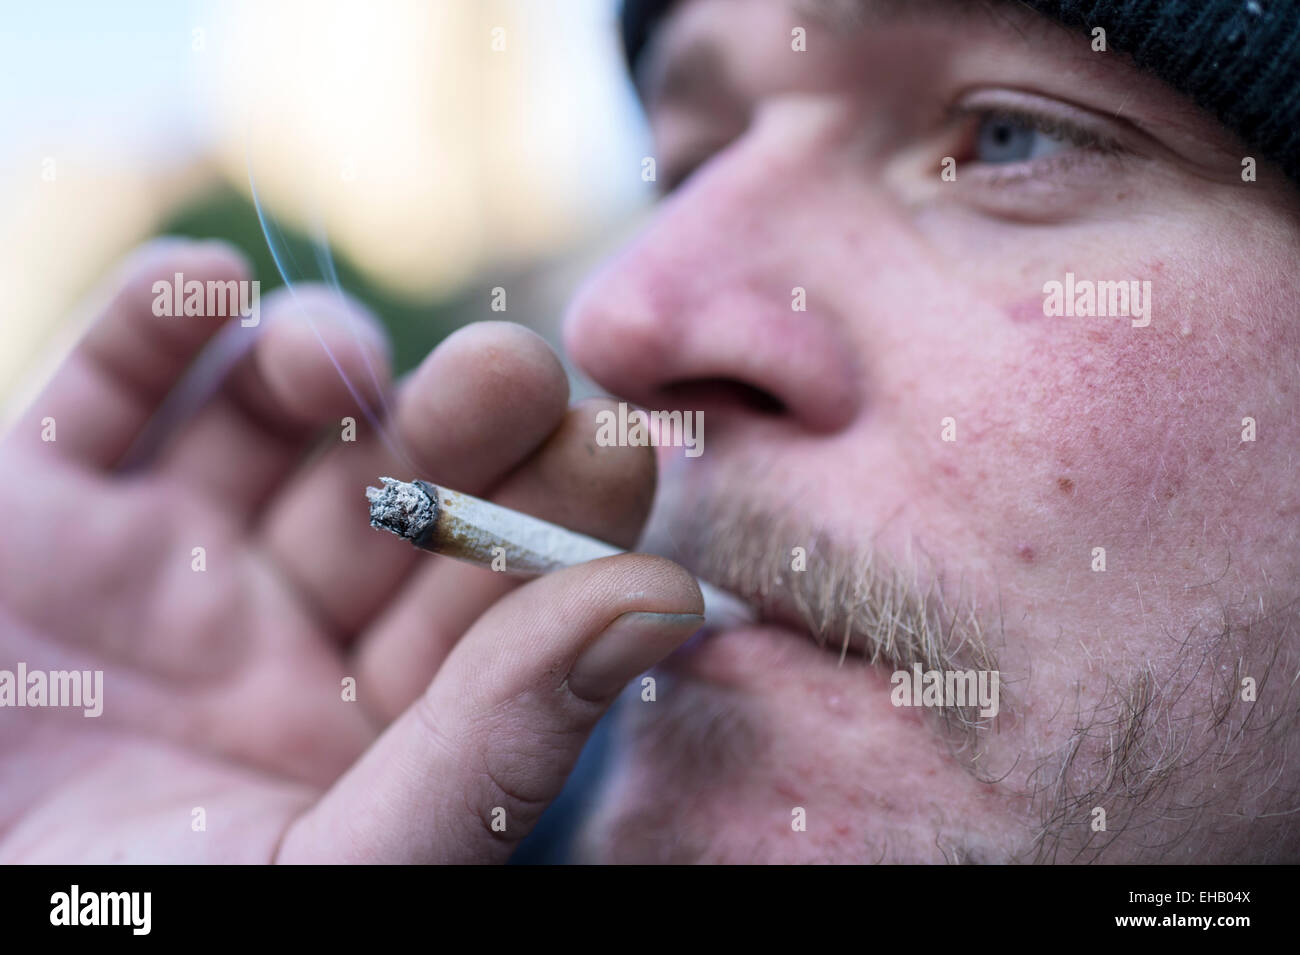 Un homme fumer un joint à l'aide de tabac et heureux joker, un haut juridique Banque D'Images